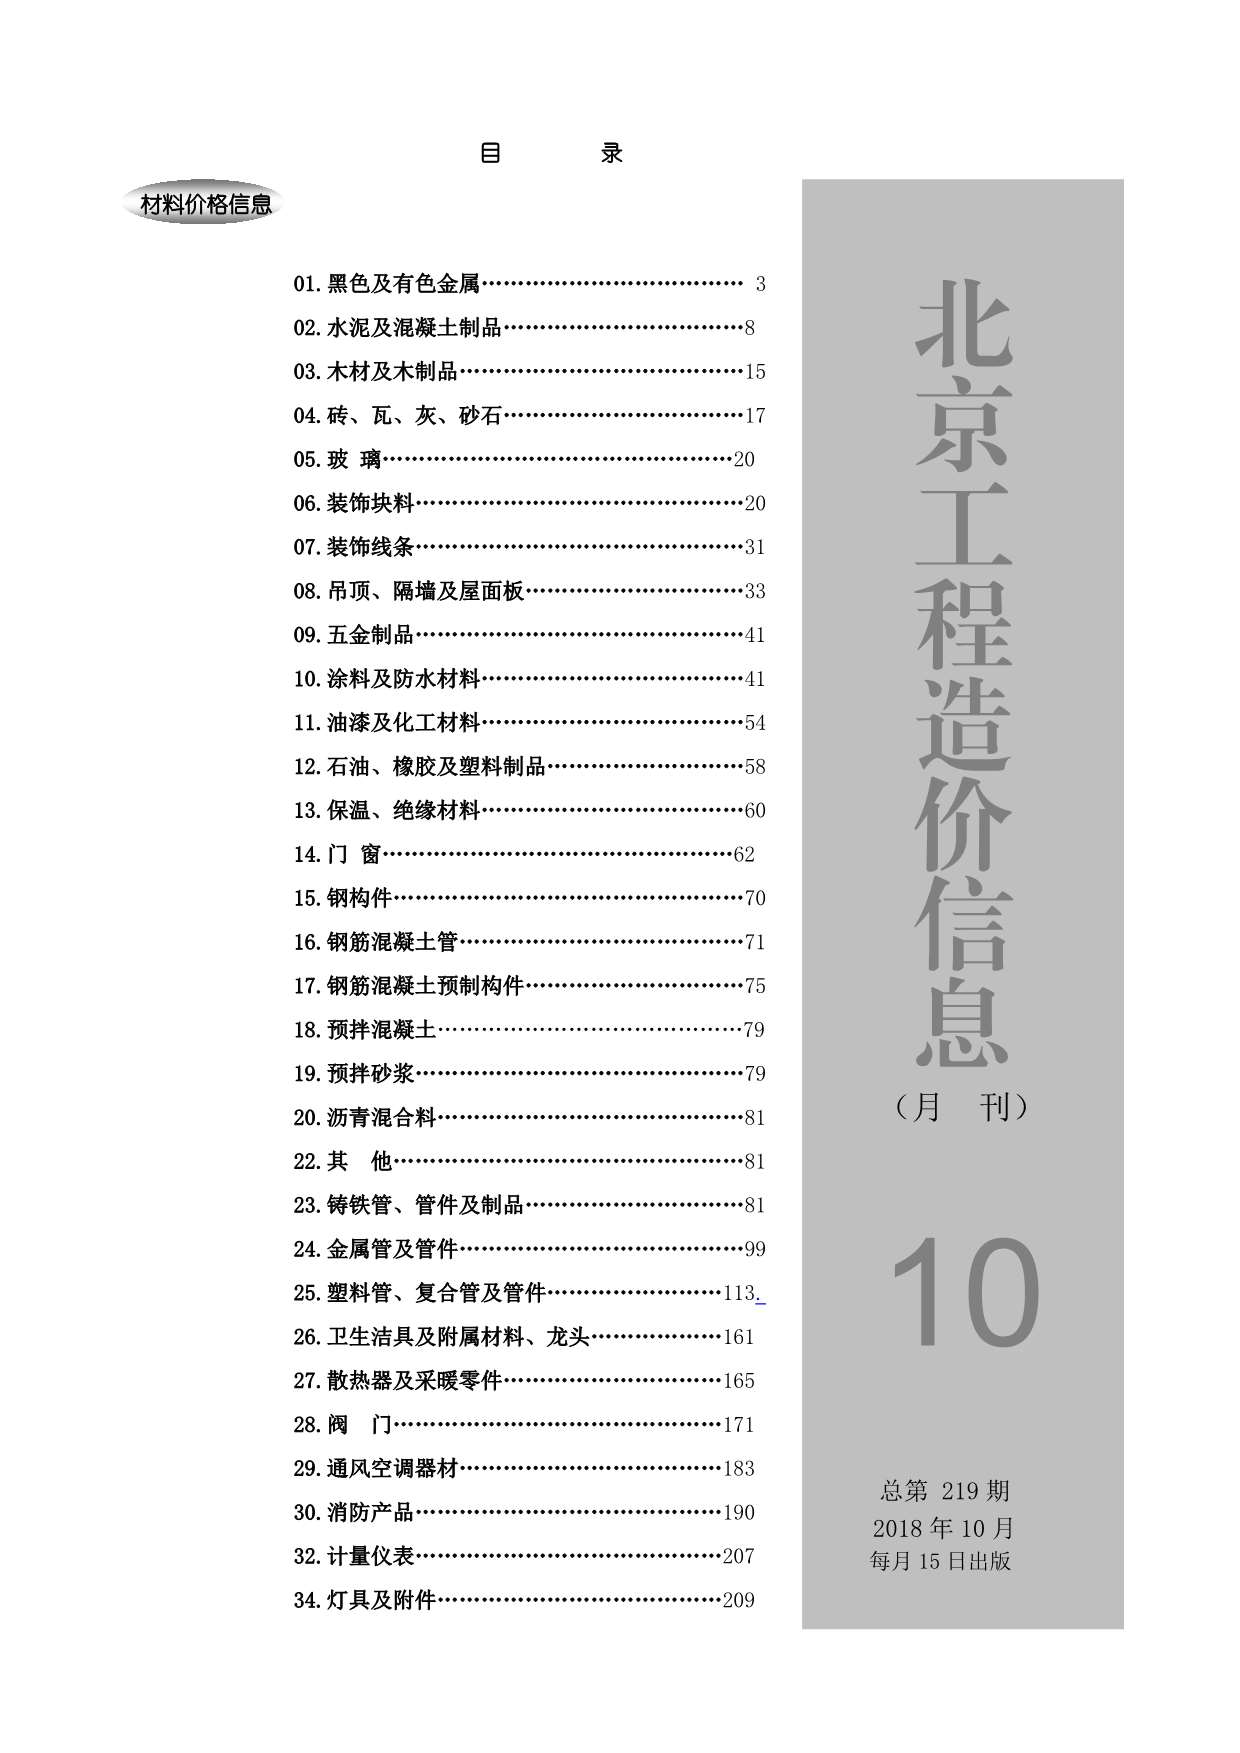 北京市2018年10月工程信息价_北京市信息价期刊PDF扫描件电子版